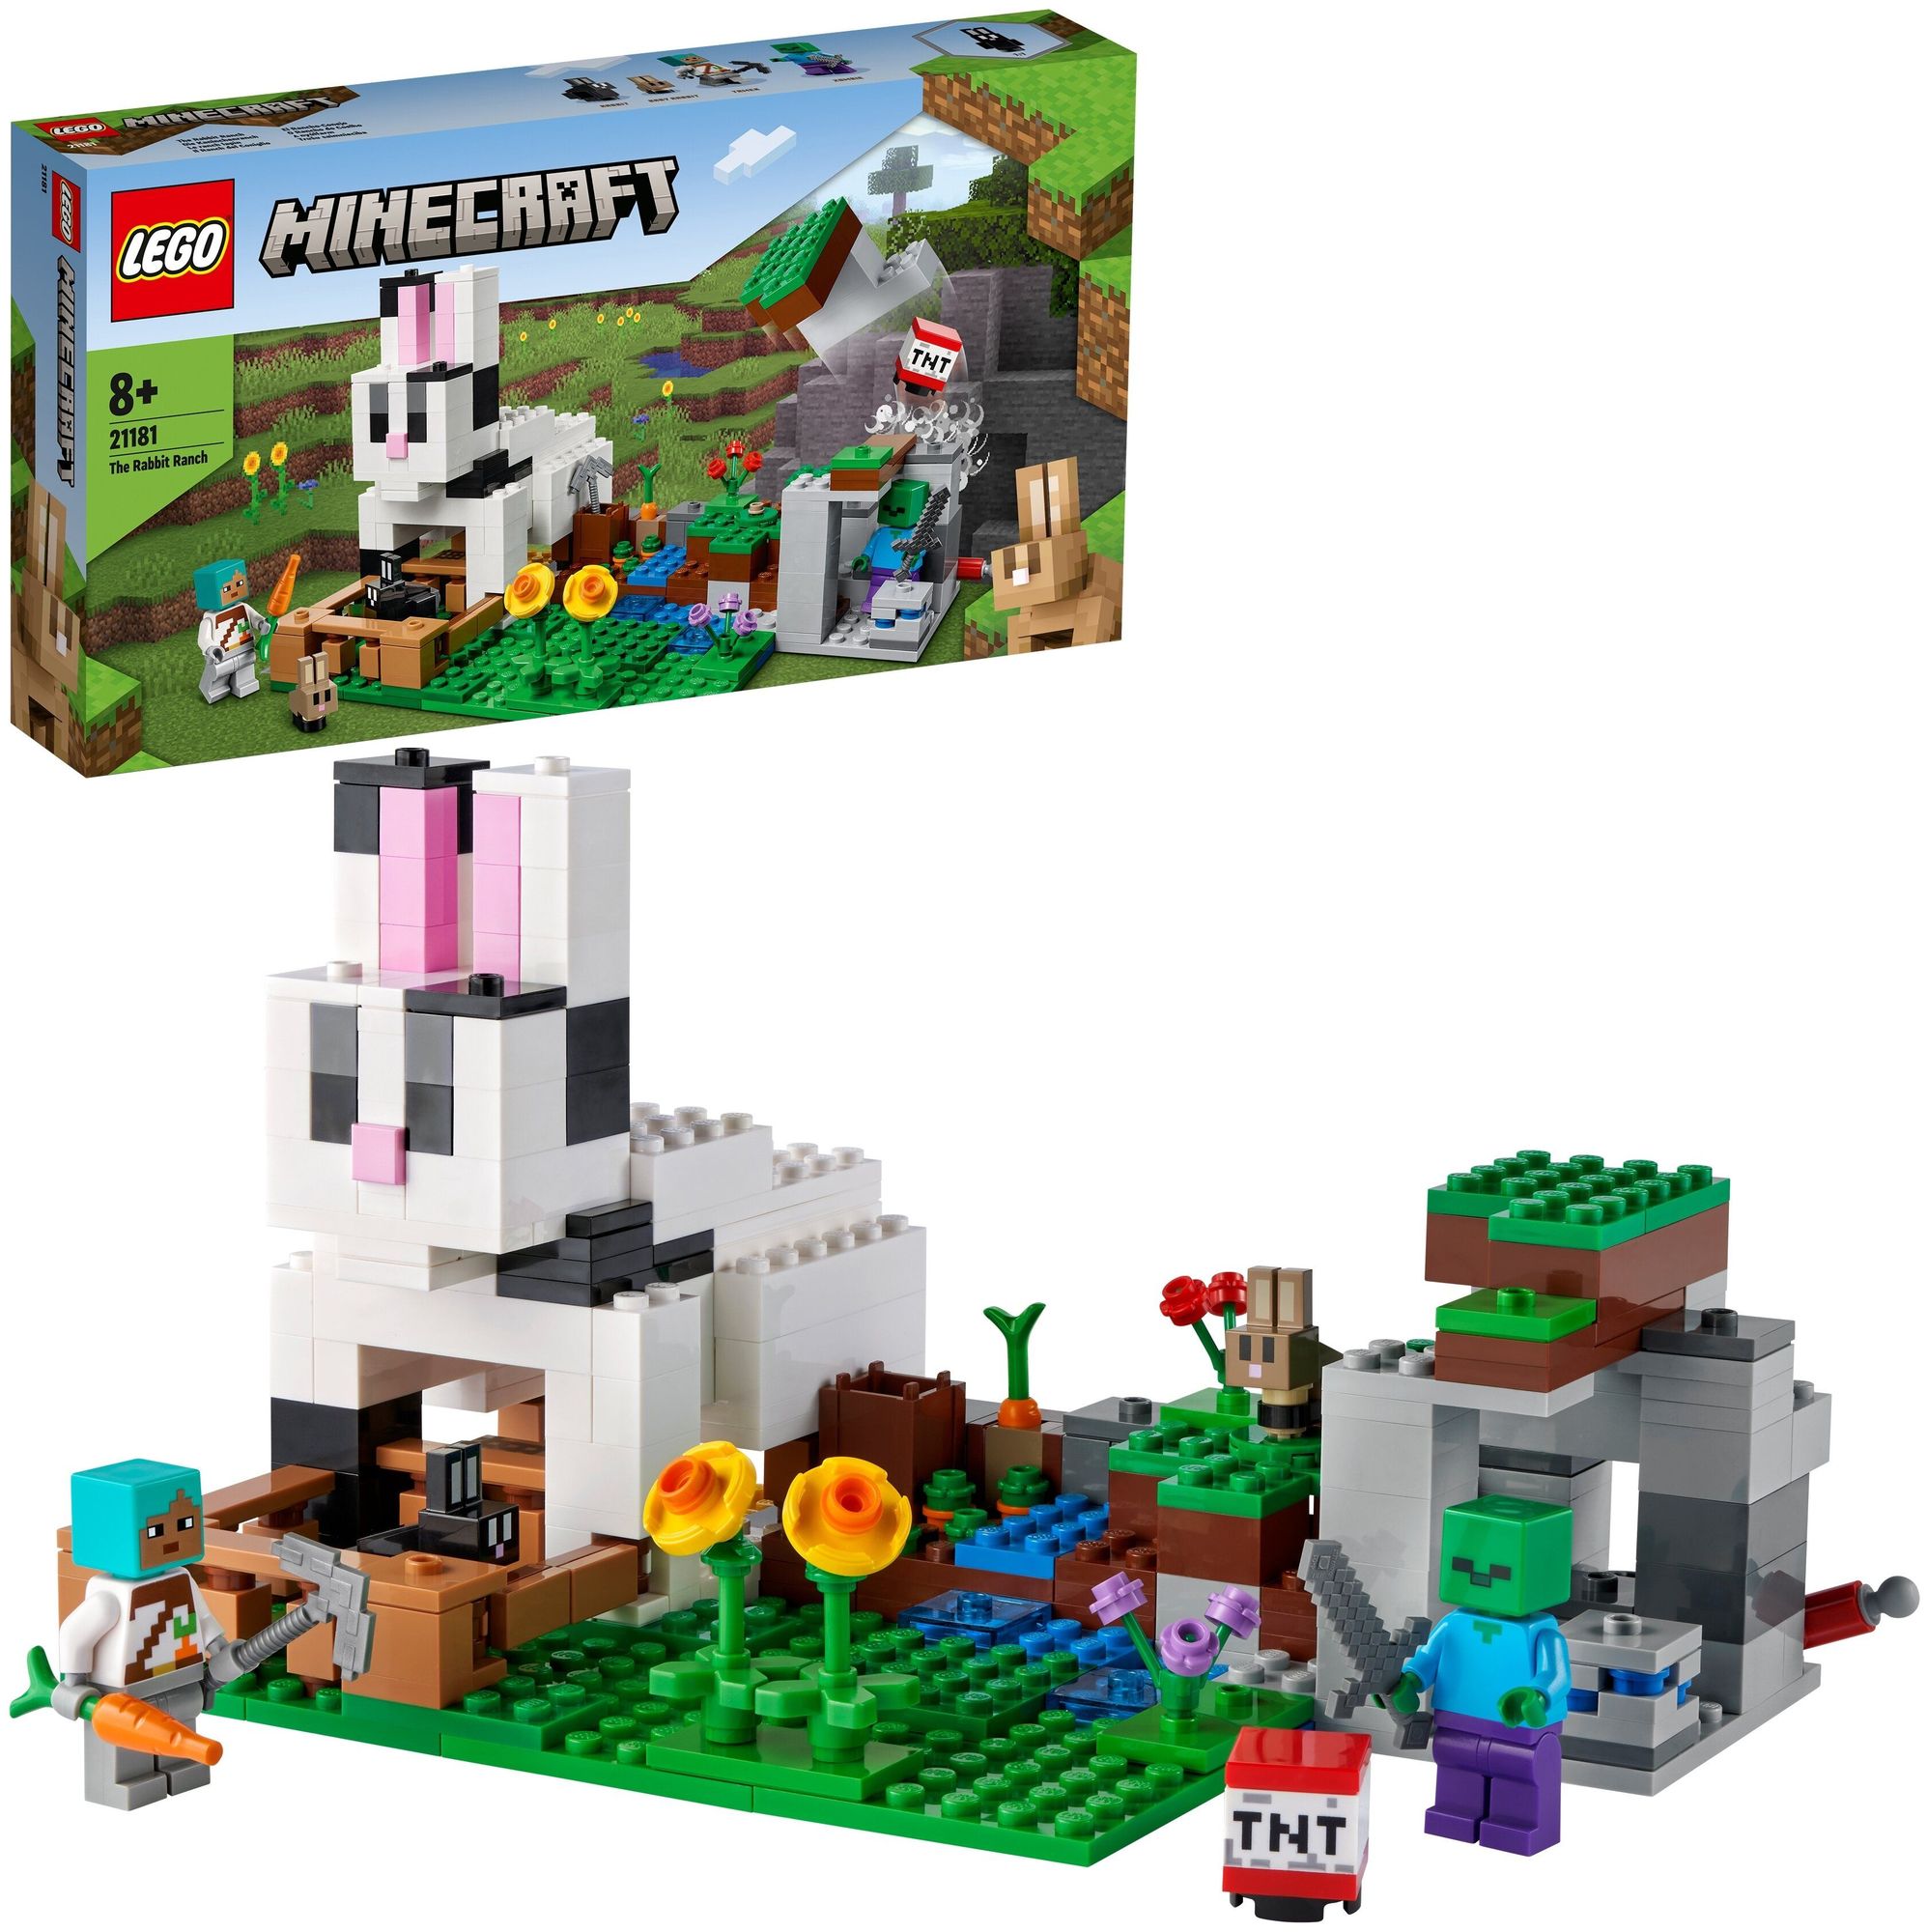 Конструктор LEGO Minecraft Кроличье ранчо 21181 цена и фото